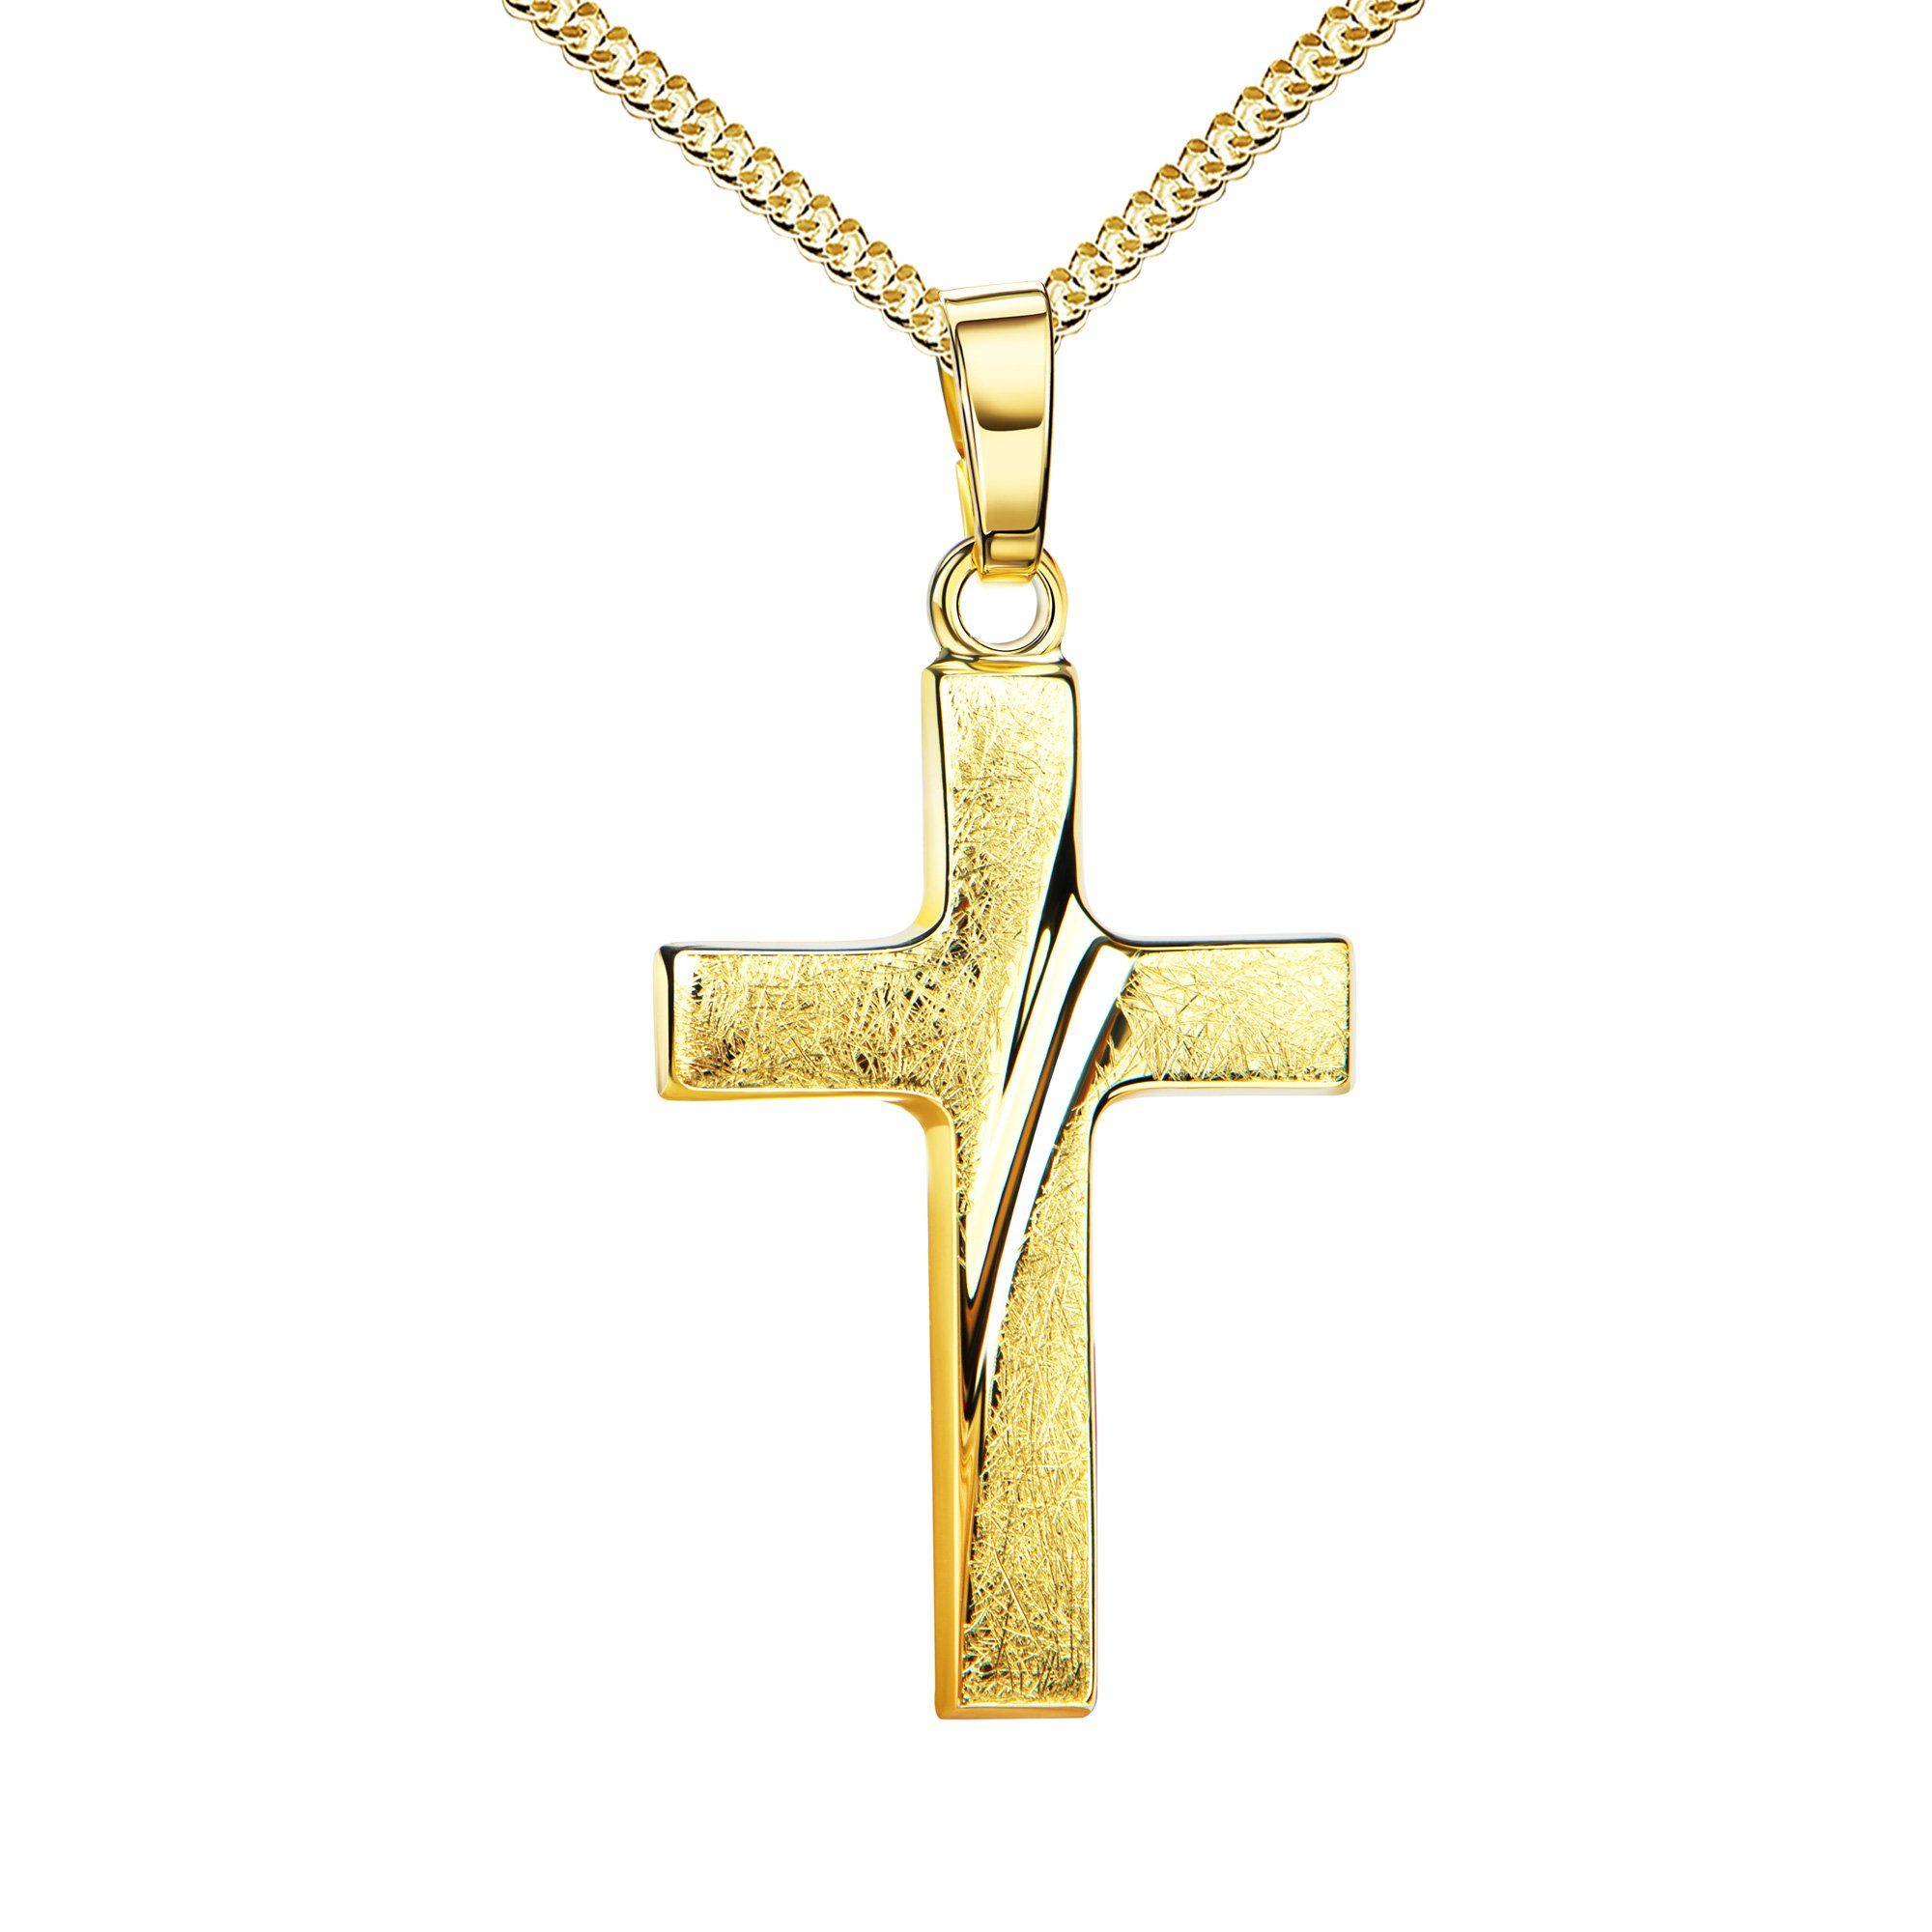 JEVELION Kreuzkette Kreuz Anhänger eismattiert 585 Gold - Made in Germany (Goldkreuz, für Damen und Herren), Mit Kette vergoldet- Länge wählbar 36 - 70 cm.